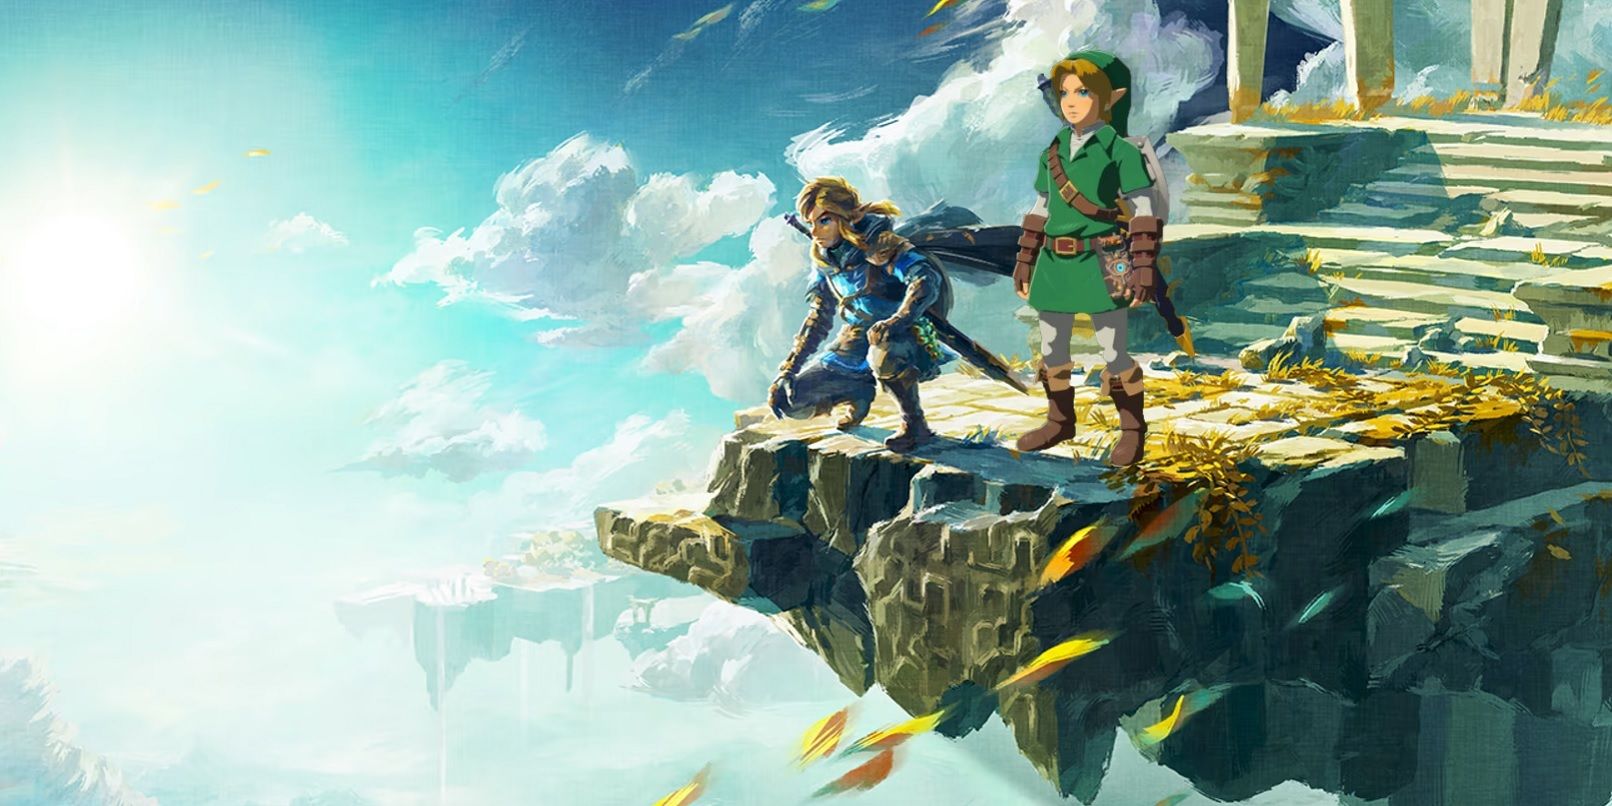 Zelda: Tears of the Kingdom sky art with Ocarina of Time Amiibo Link